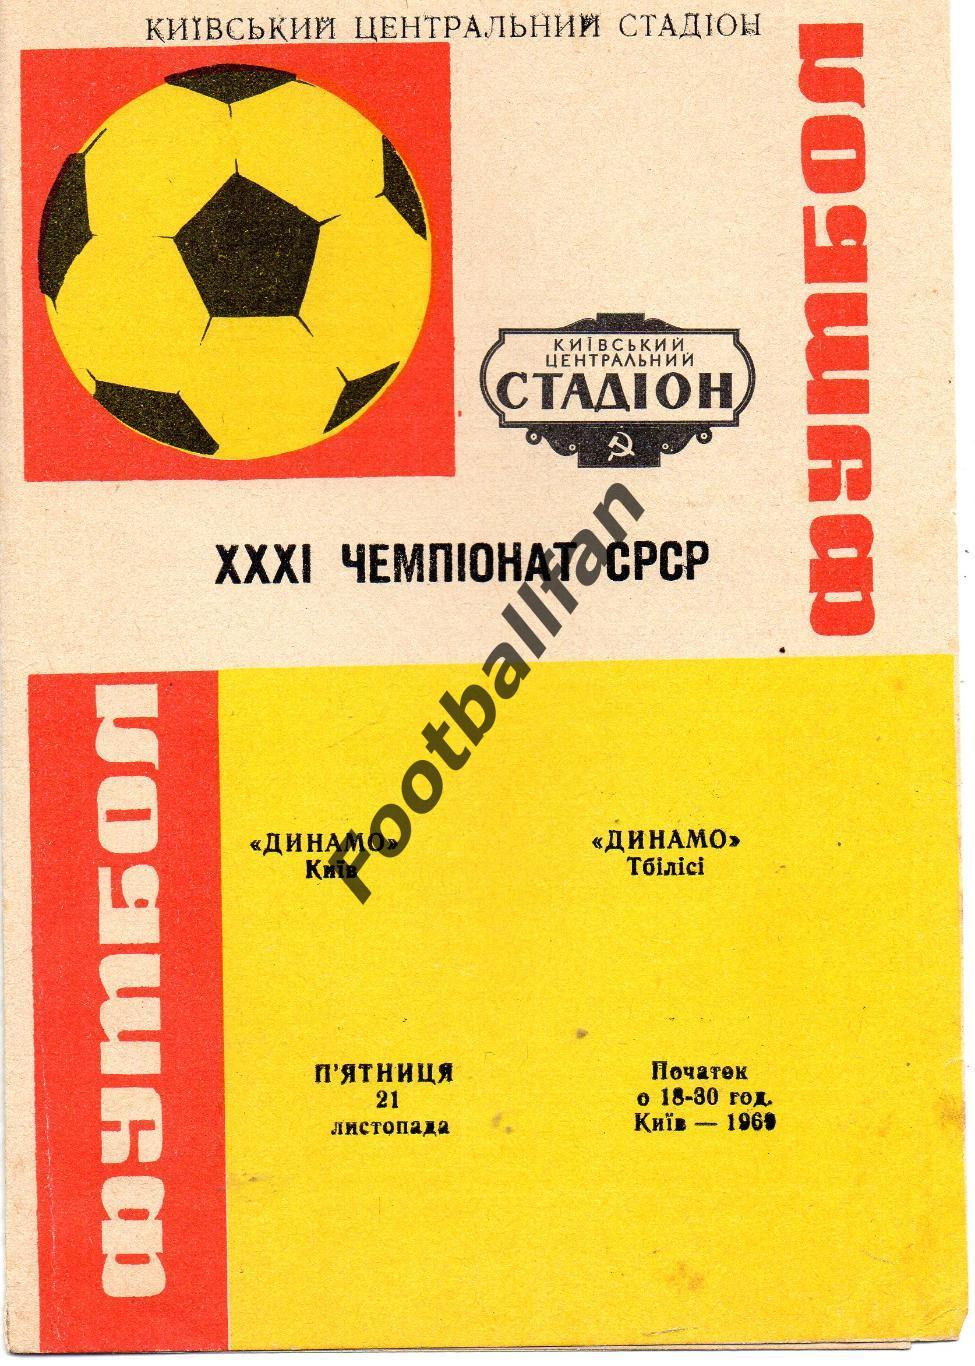 Динамо Киев - Динамо Тбилиси 21.11.1969